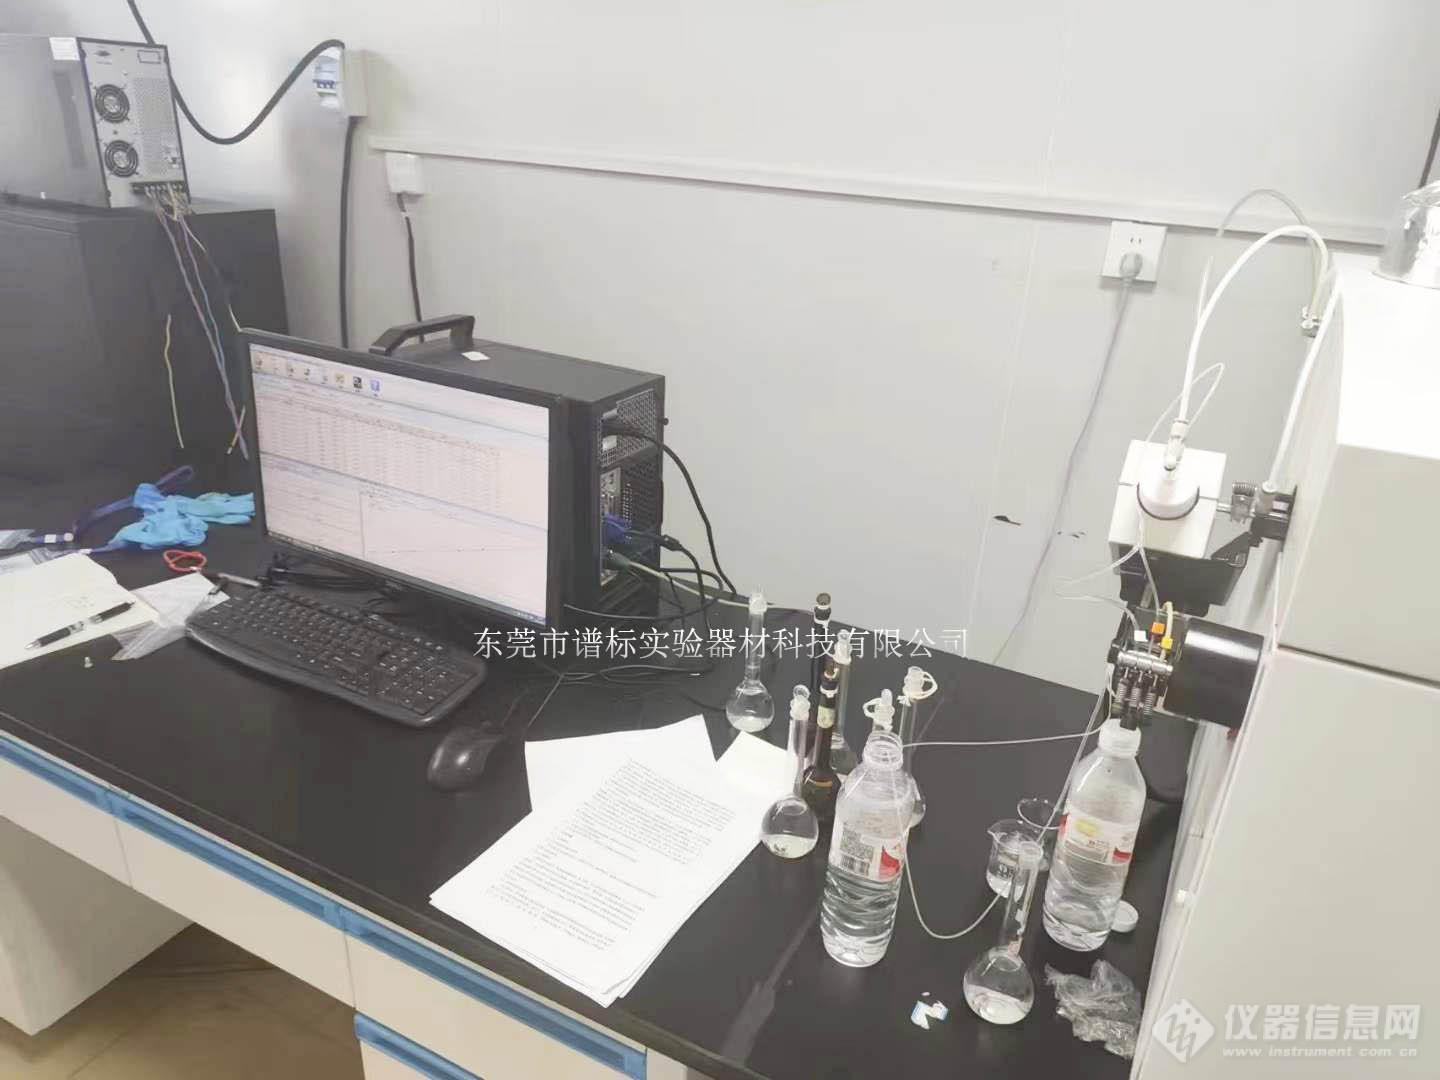 安捷伦电感耦合等离子体质谱仪 ICP-MS 7700X在郑州检测金属元素分析